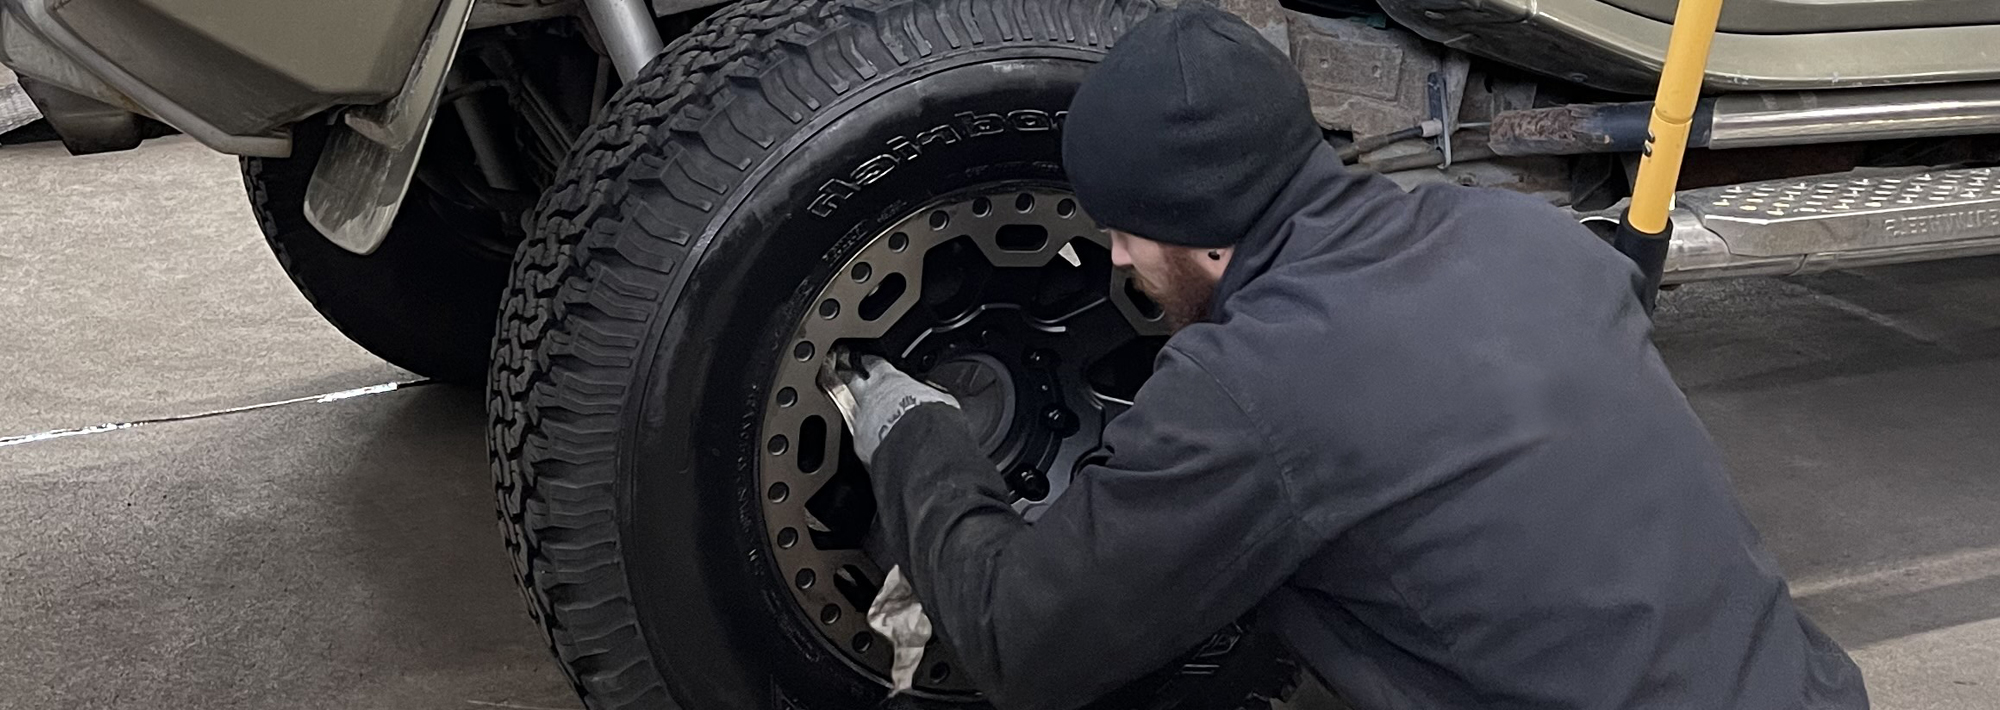 Regommex SA, spécialiste du pneu en Suisse Romande, Romanel, Lausanne, Vernier, Genève, service pour vos pneus